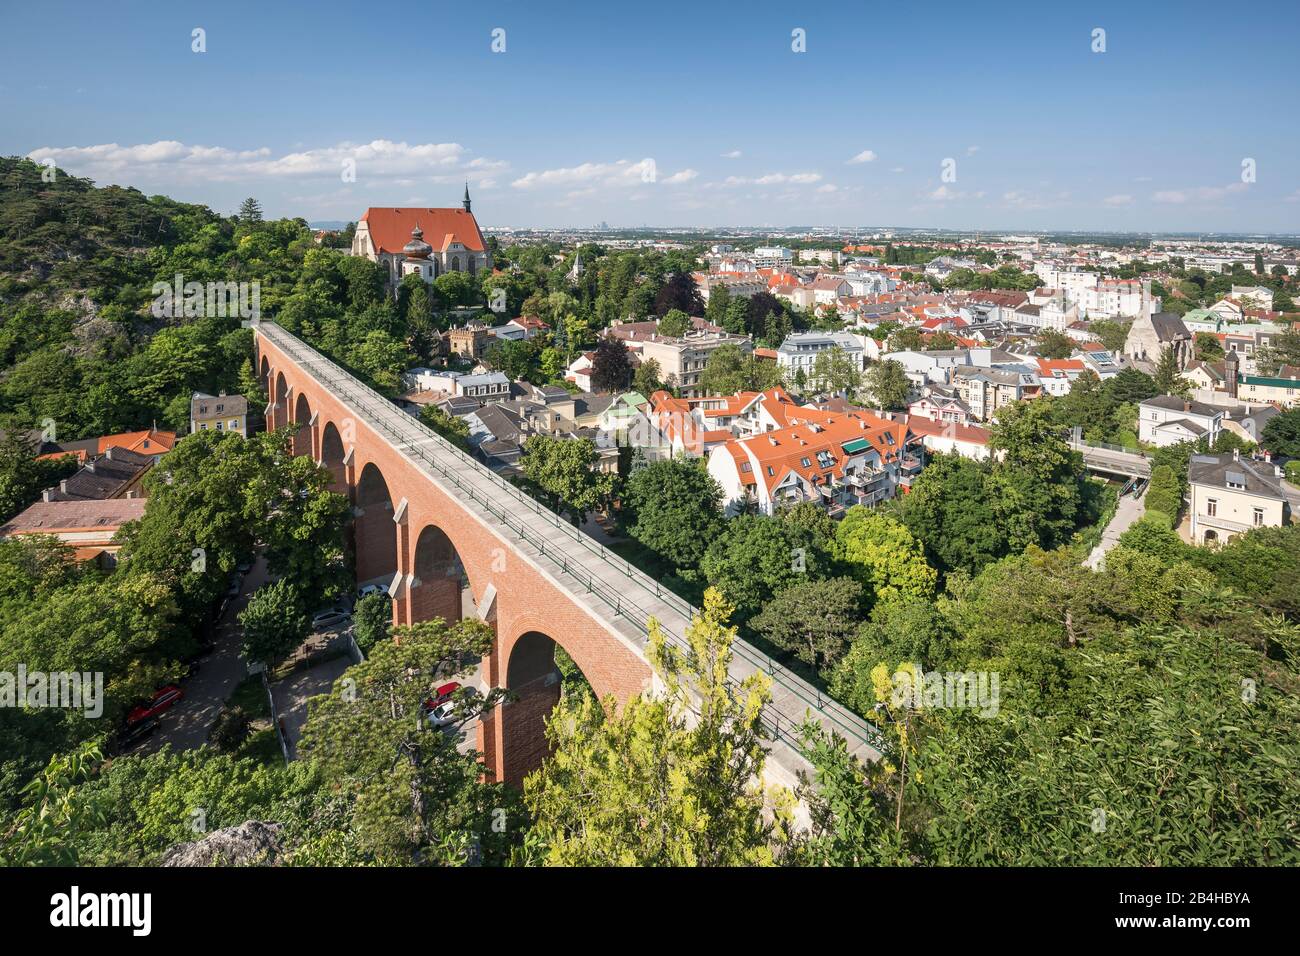 Blick auf Mödling mit Aquädukt der 1. Wiener Hochquellwasserleitung, hinten das Wiener Becken, Mödling, Niederösterreich, Österreich Stock Photo